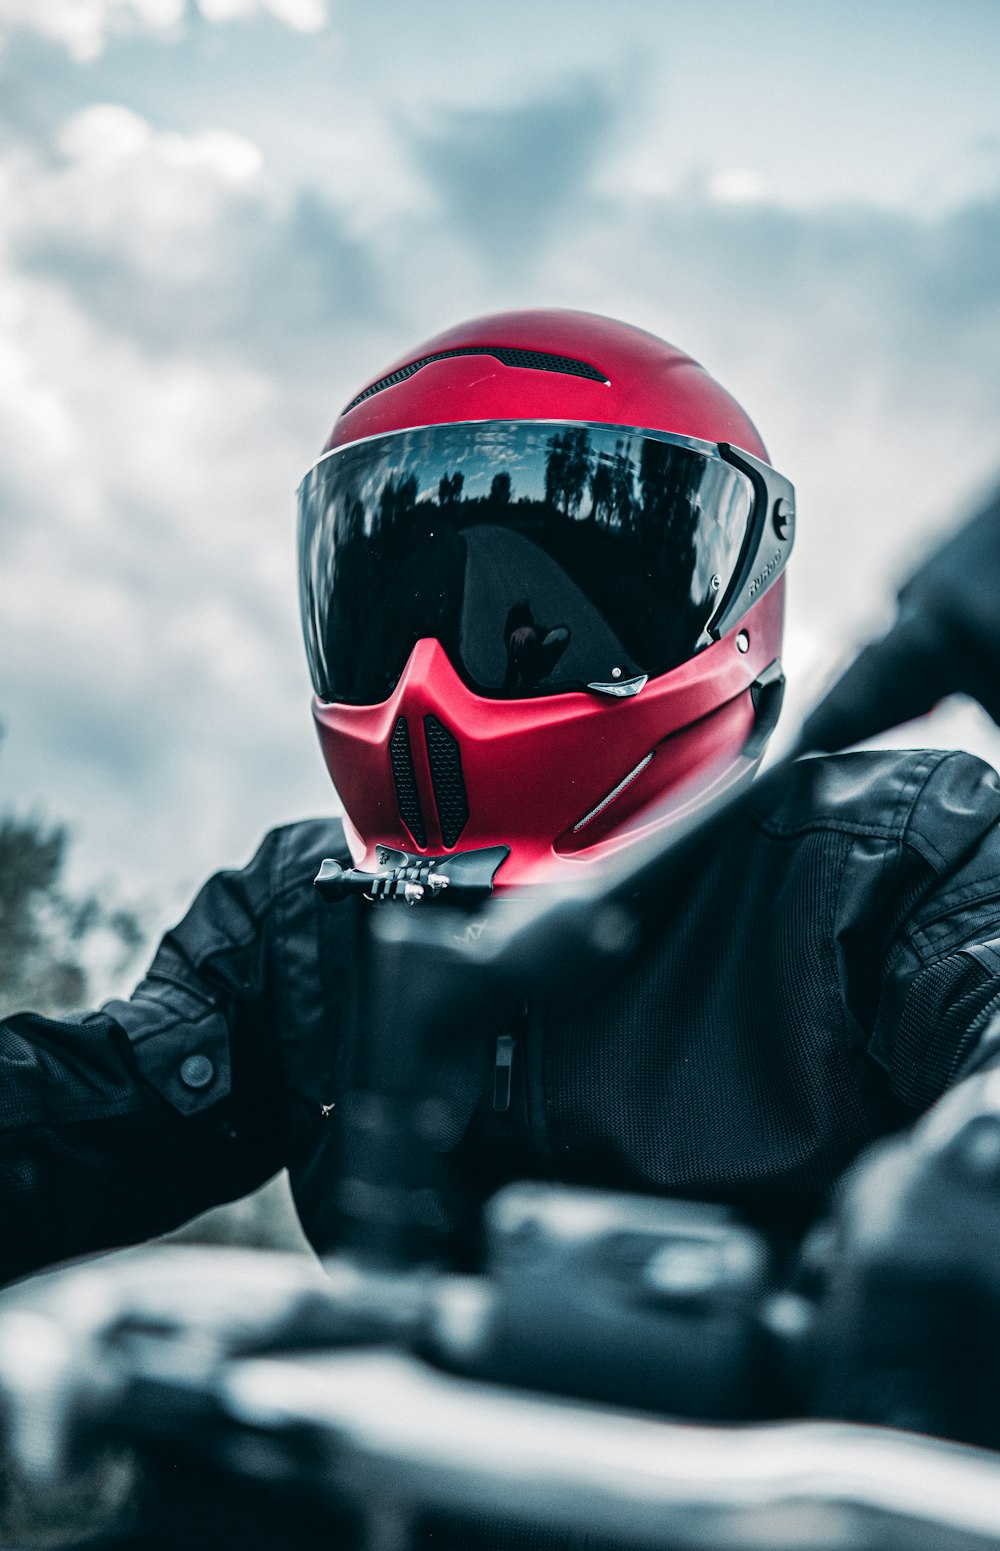 Eine Person mit rotem Helm und schwarzer Jacke sitzt auf einem Motorrad